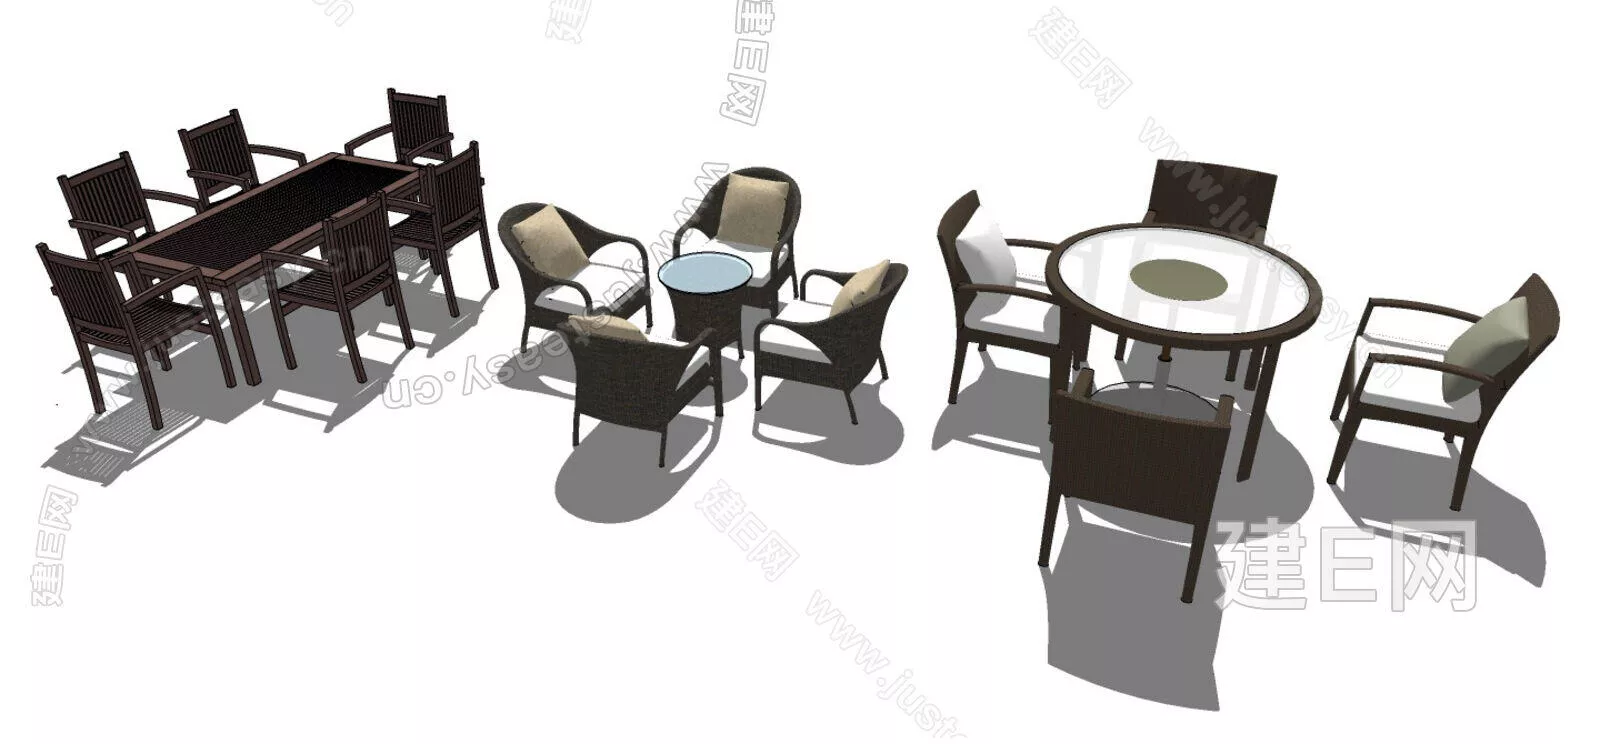 MODERN DINING TABLE SET - SKETCHUP 3D MODEL - ENSCAPE - 111952222